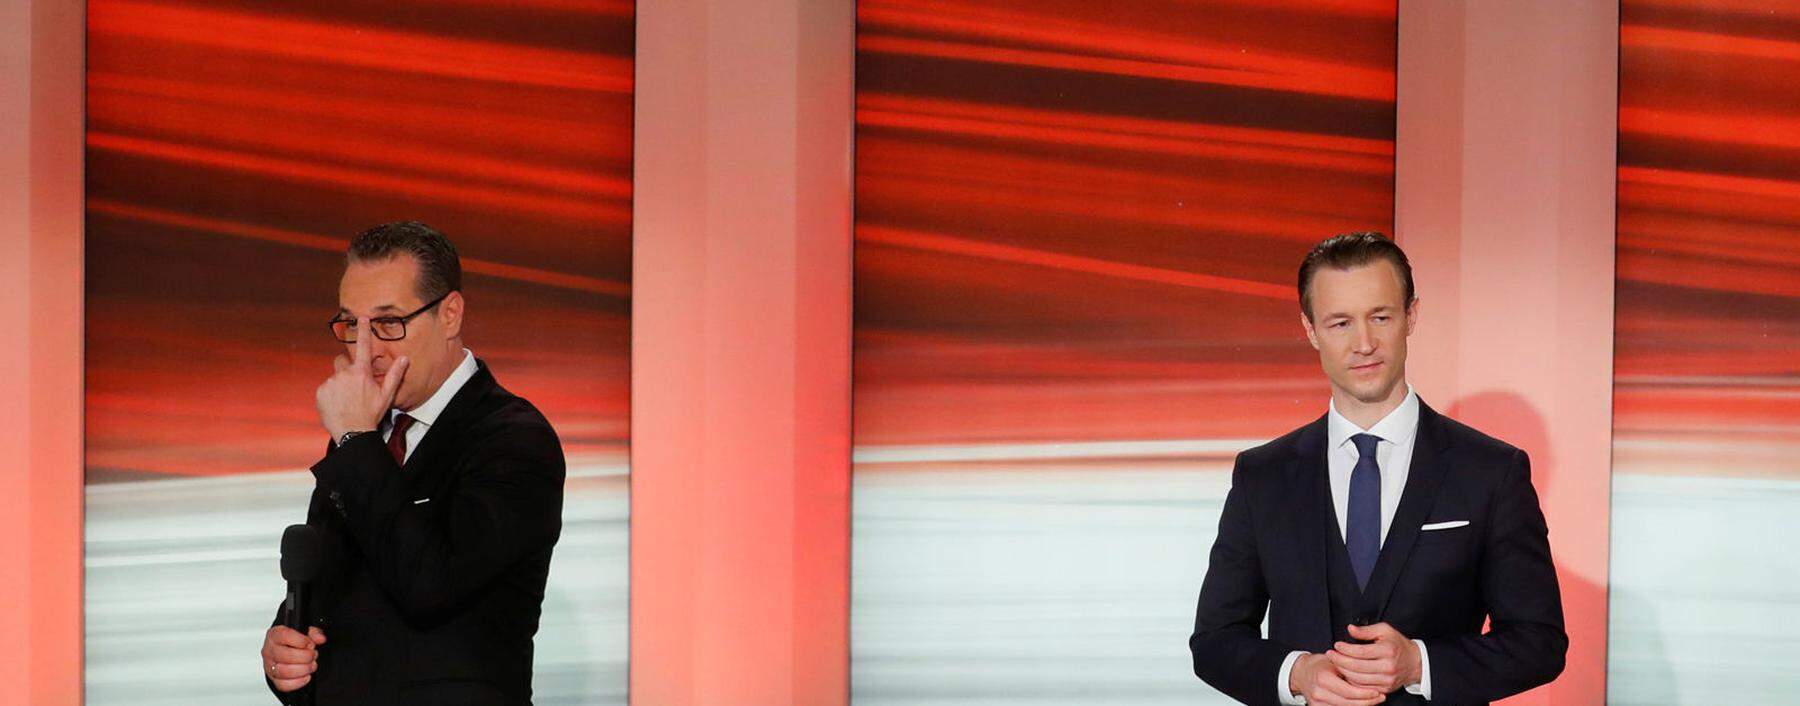 Heinz-Christian Strache und Gernot Blümel kurz nach der Wien-Wahl.